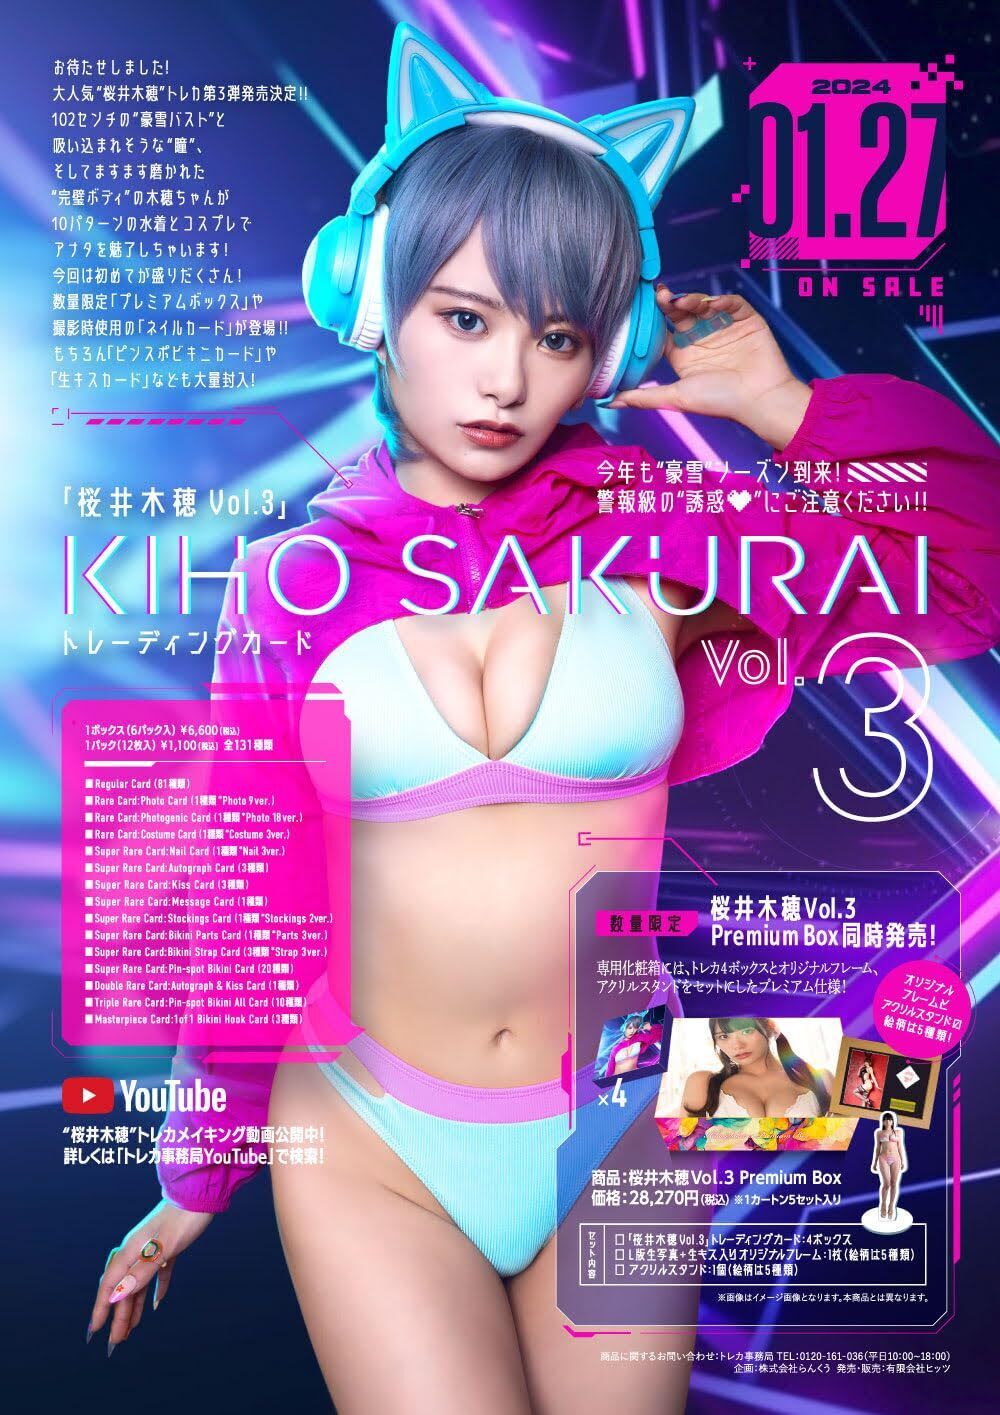 Hit's Kiho Sakurai Vol.3 Premium Box New